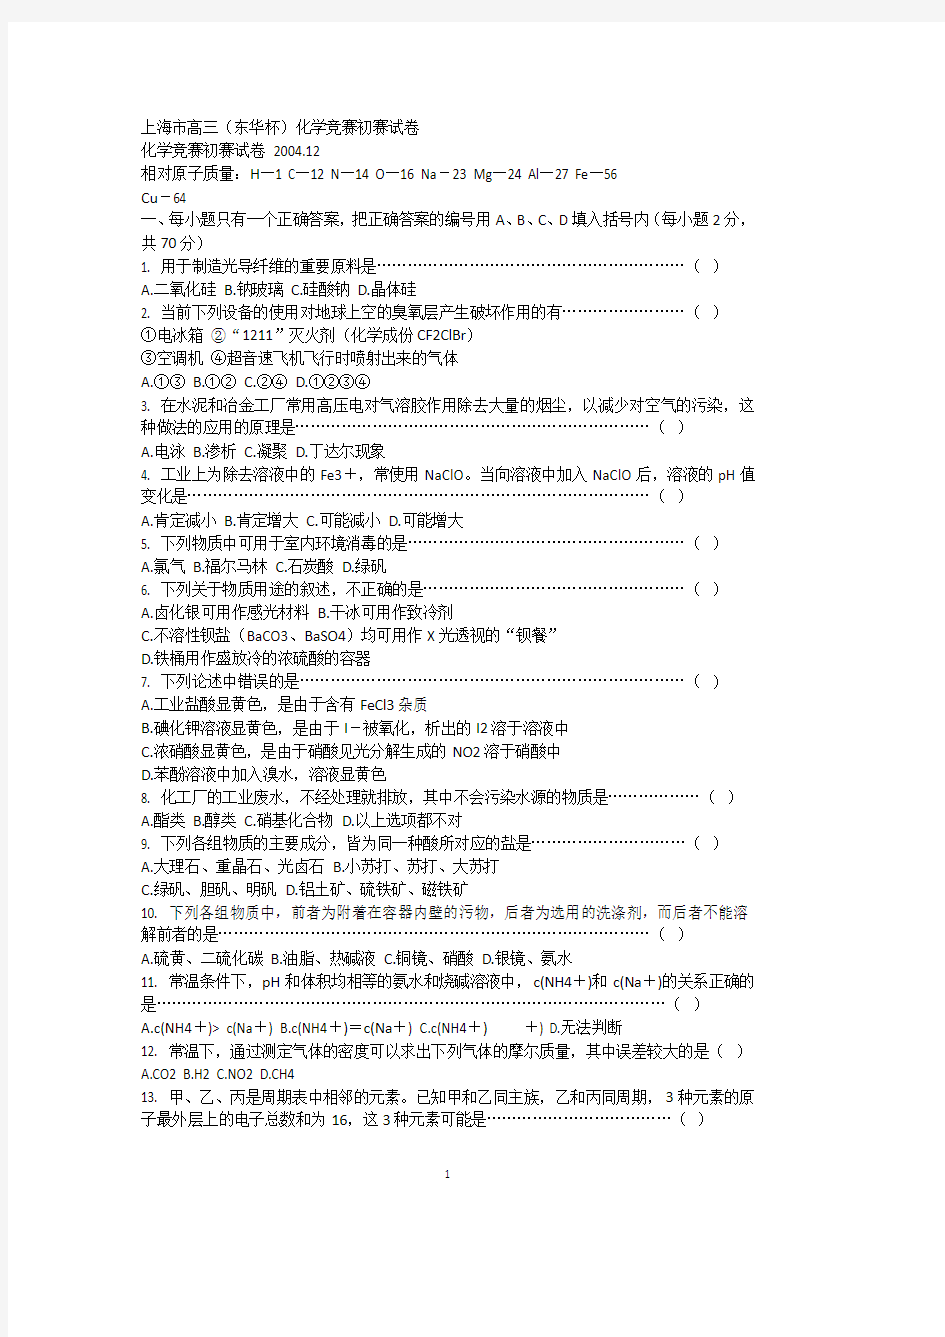 上海市高三(东华杯)化学竞赛初赛试卷.12(2020年整理).pdf